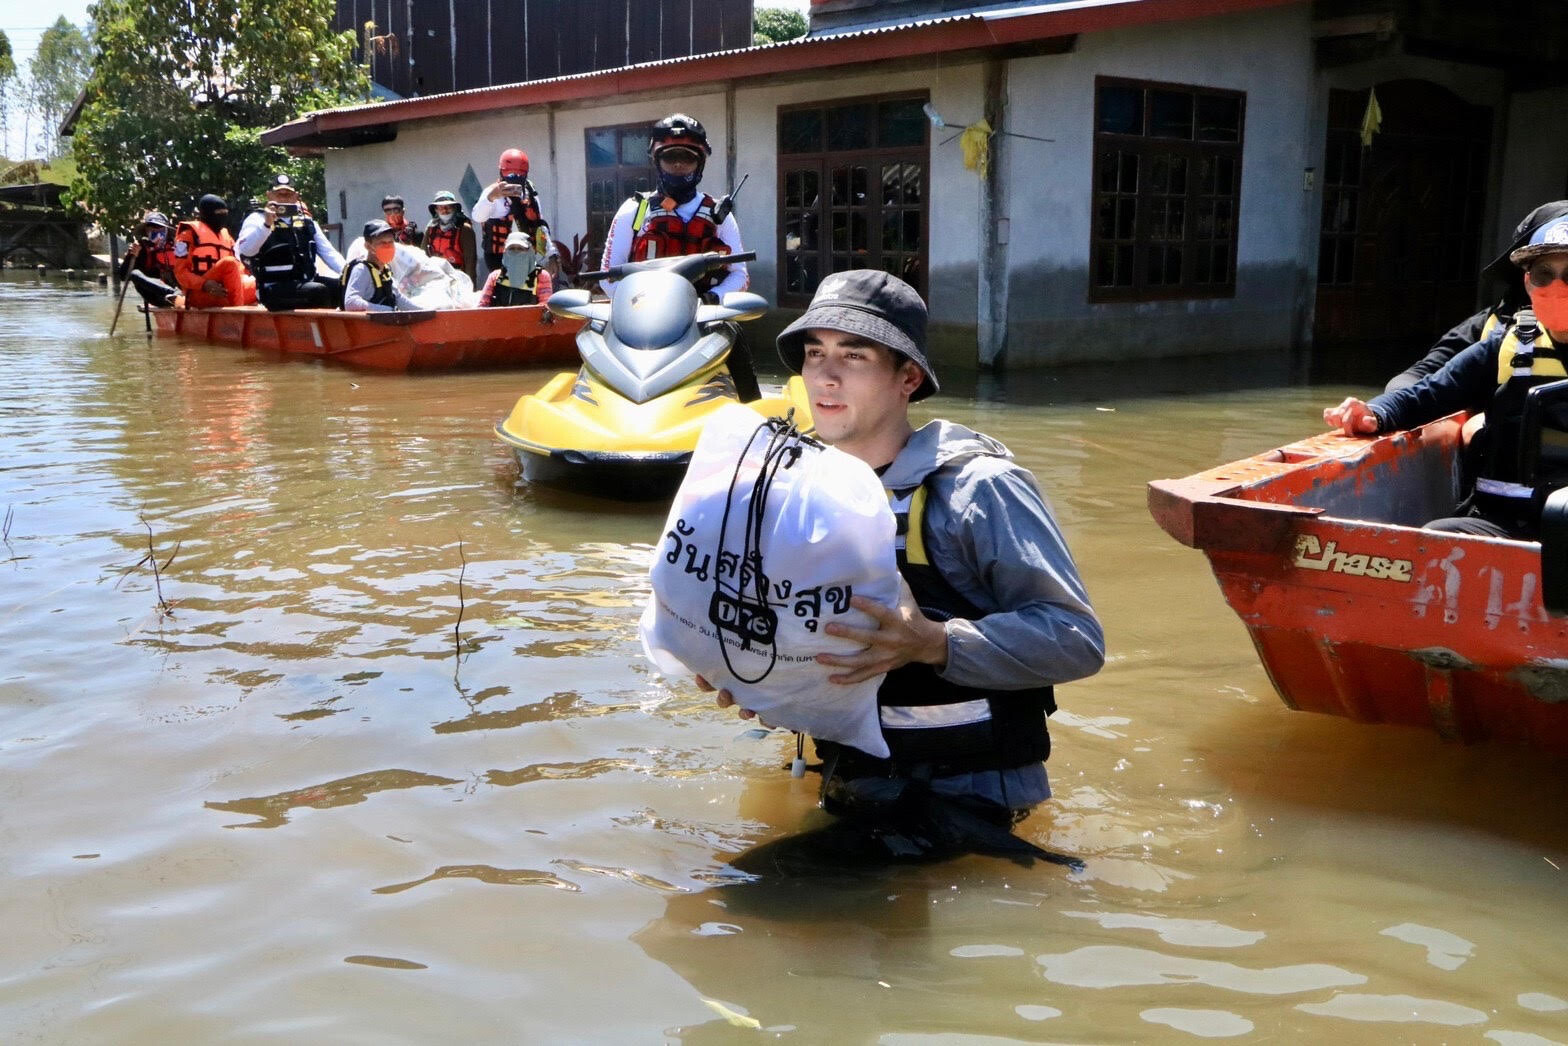 "วันสร้างสุข สู้ภัยน้ำท่วม" เดินหน้าส่งต่อความช่วยเหลือ ลงพื้นที่มอบถุงยังชีพ ขอนแก่น-ชัยภูมิ